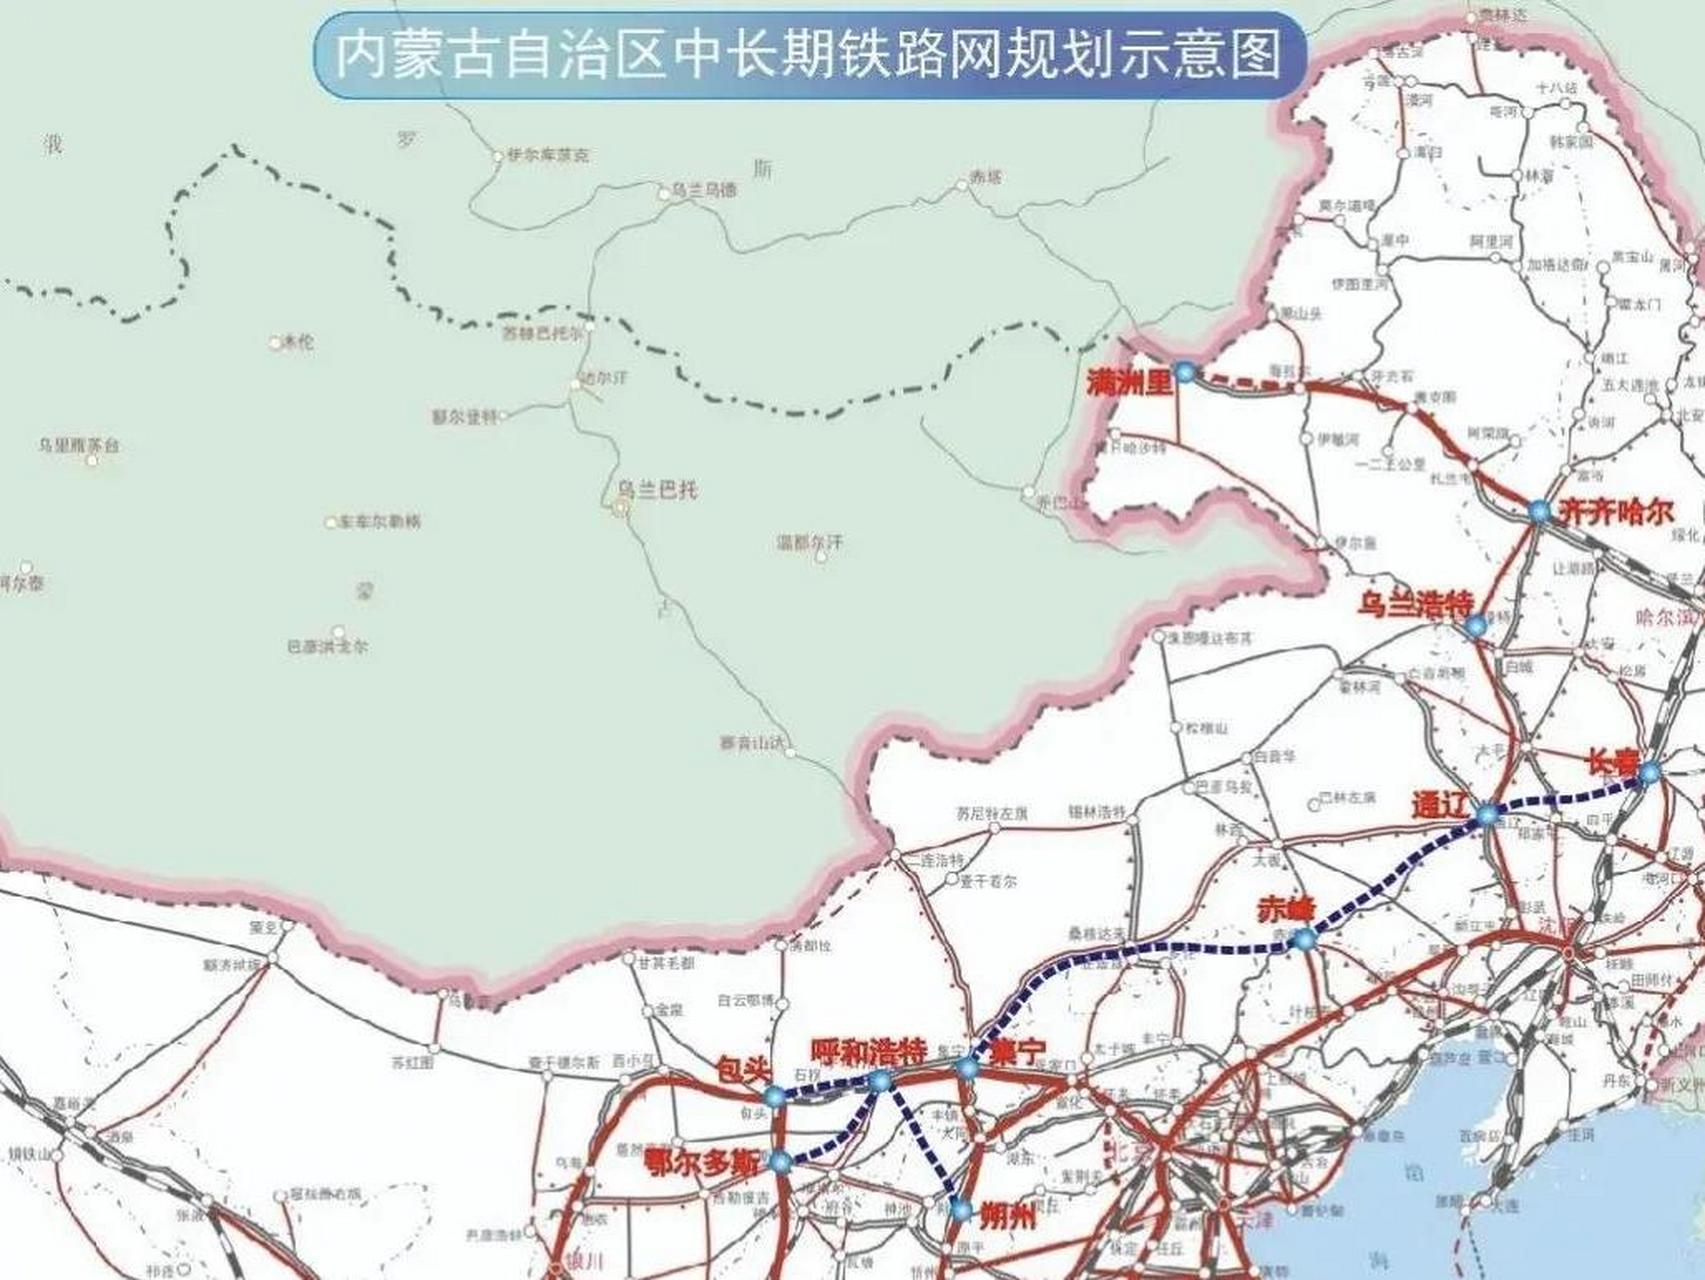 近日,内蒙古自治区十四五铁路发展规划正式发布,力争到2025年,铁路